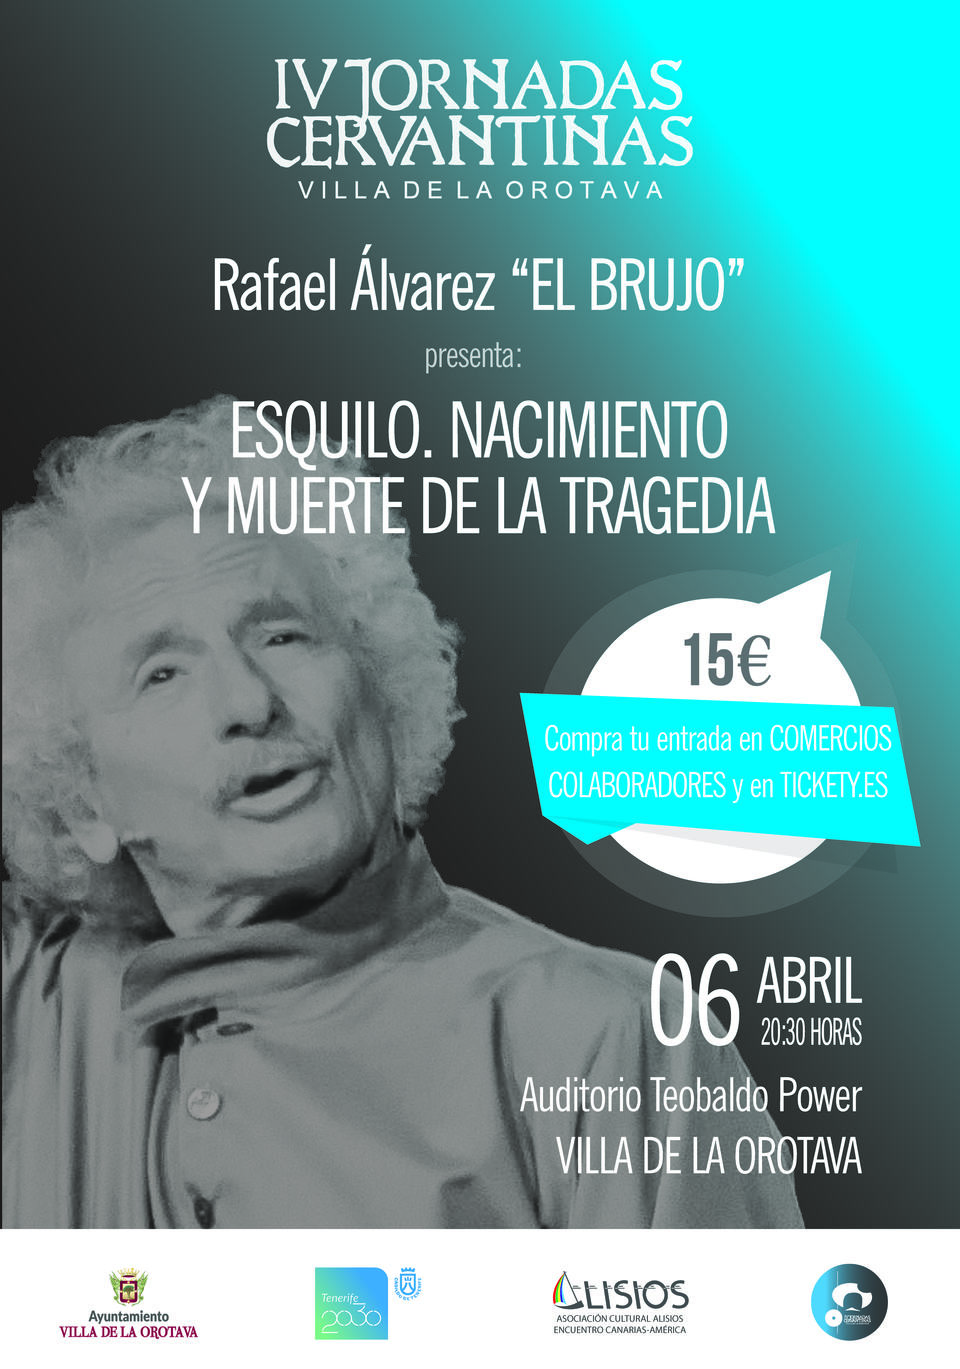 Rafael Álvarez El Brujo, el maestro de los clásicos, irrumpe en La Orotava